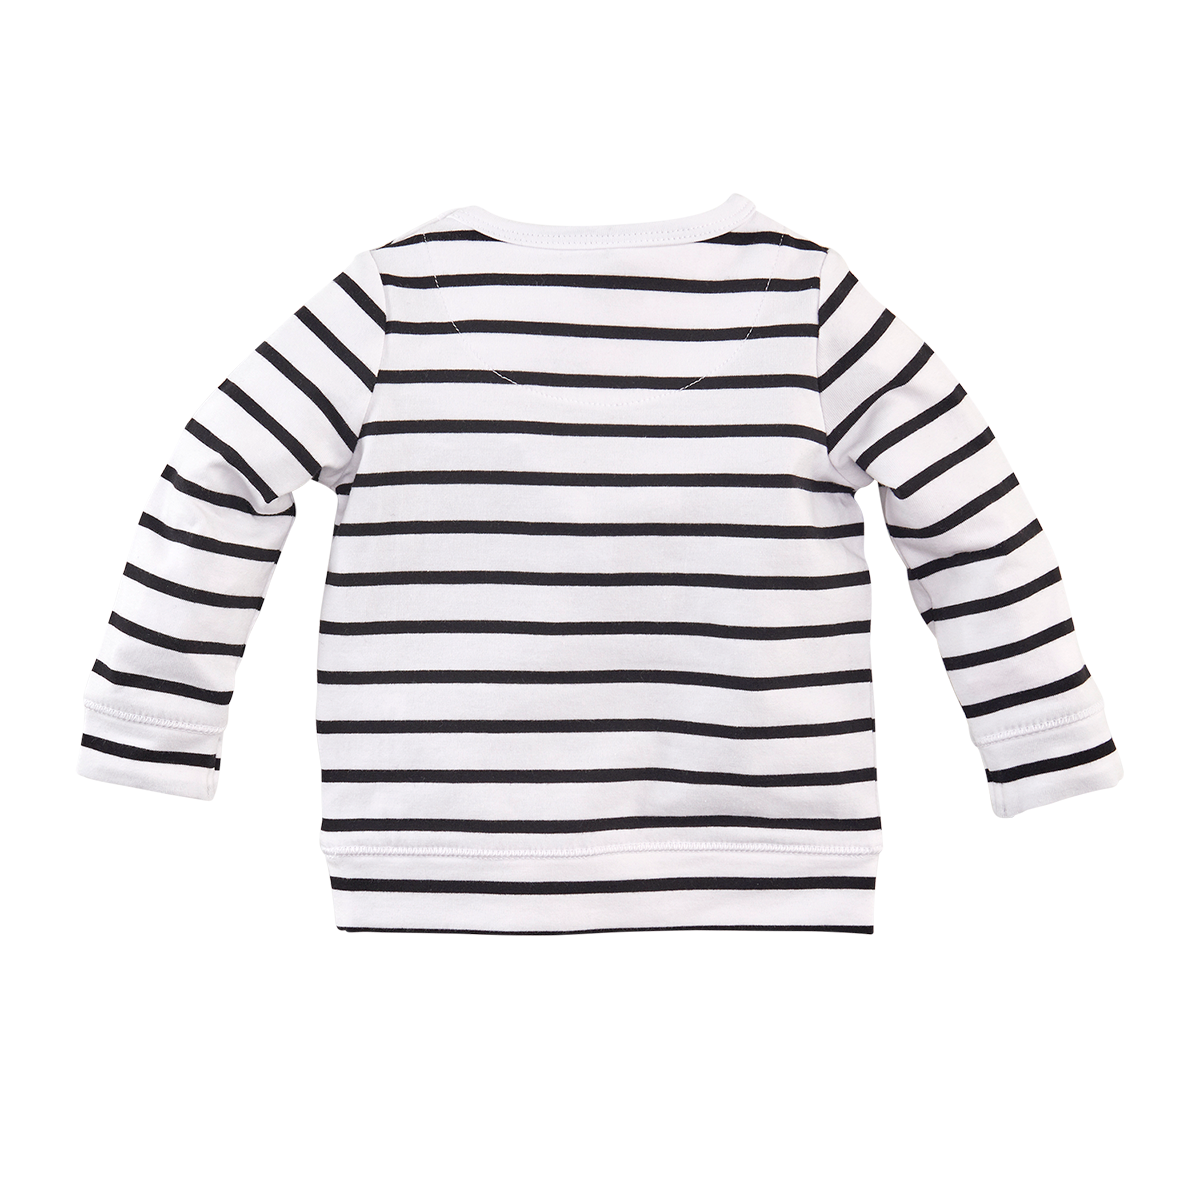 Jongen, Bright white/Black/Stripes, 74, Z8, €15-€20, Long sleeves, 20-zomer, 191219